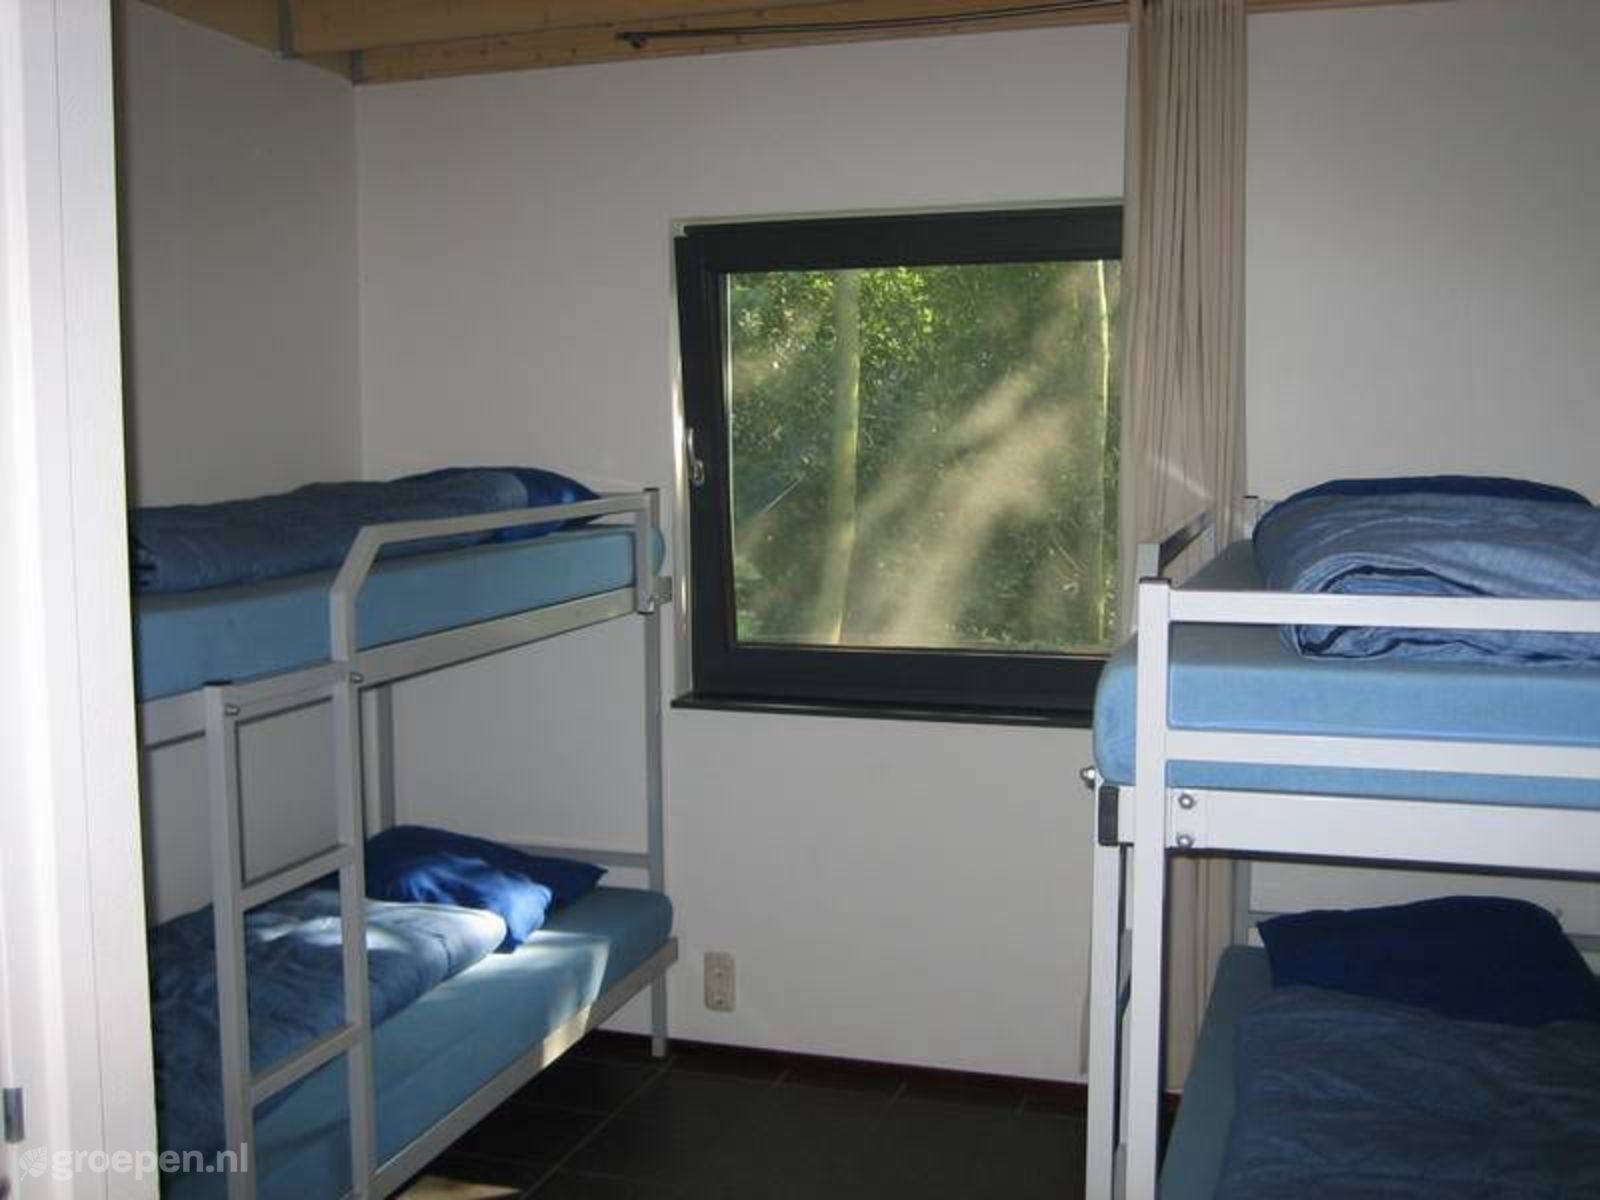 Group accommodation Midlaren